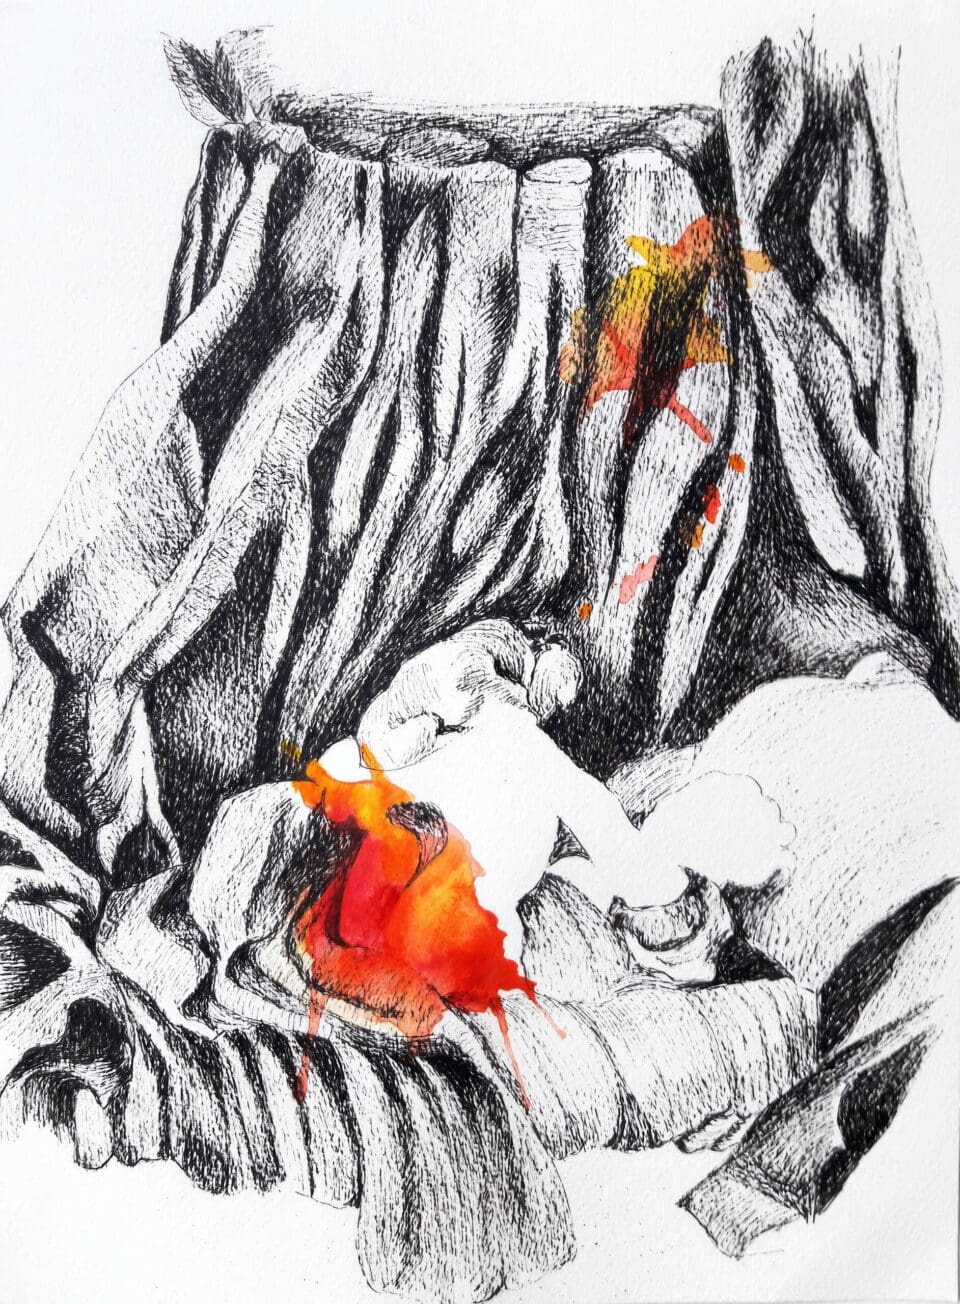 Jeune fille d'après Fragonard 2020, Encre de chine et aquarelle sur papier, 24x32 cm